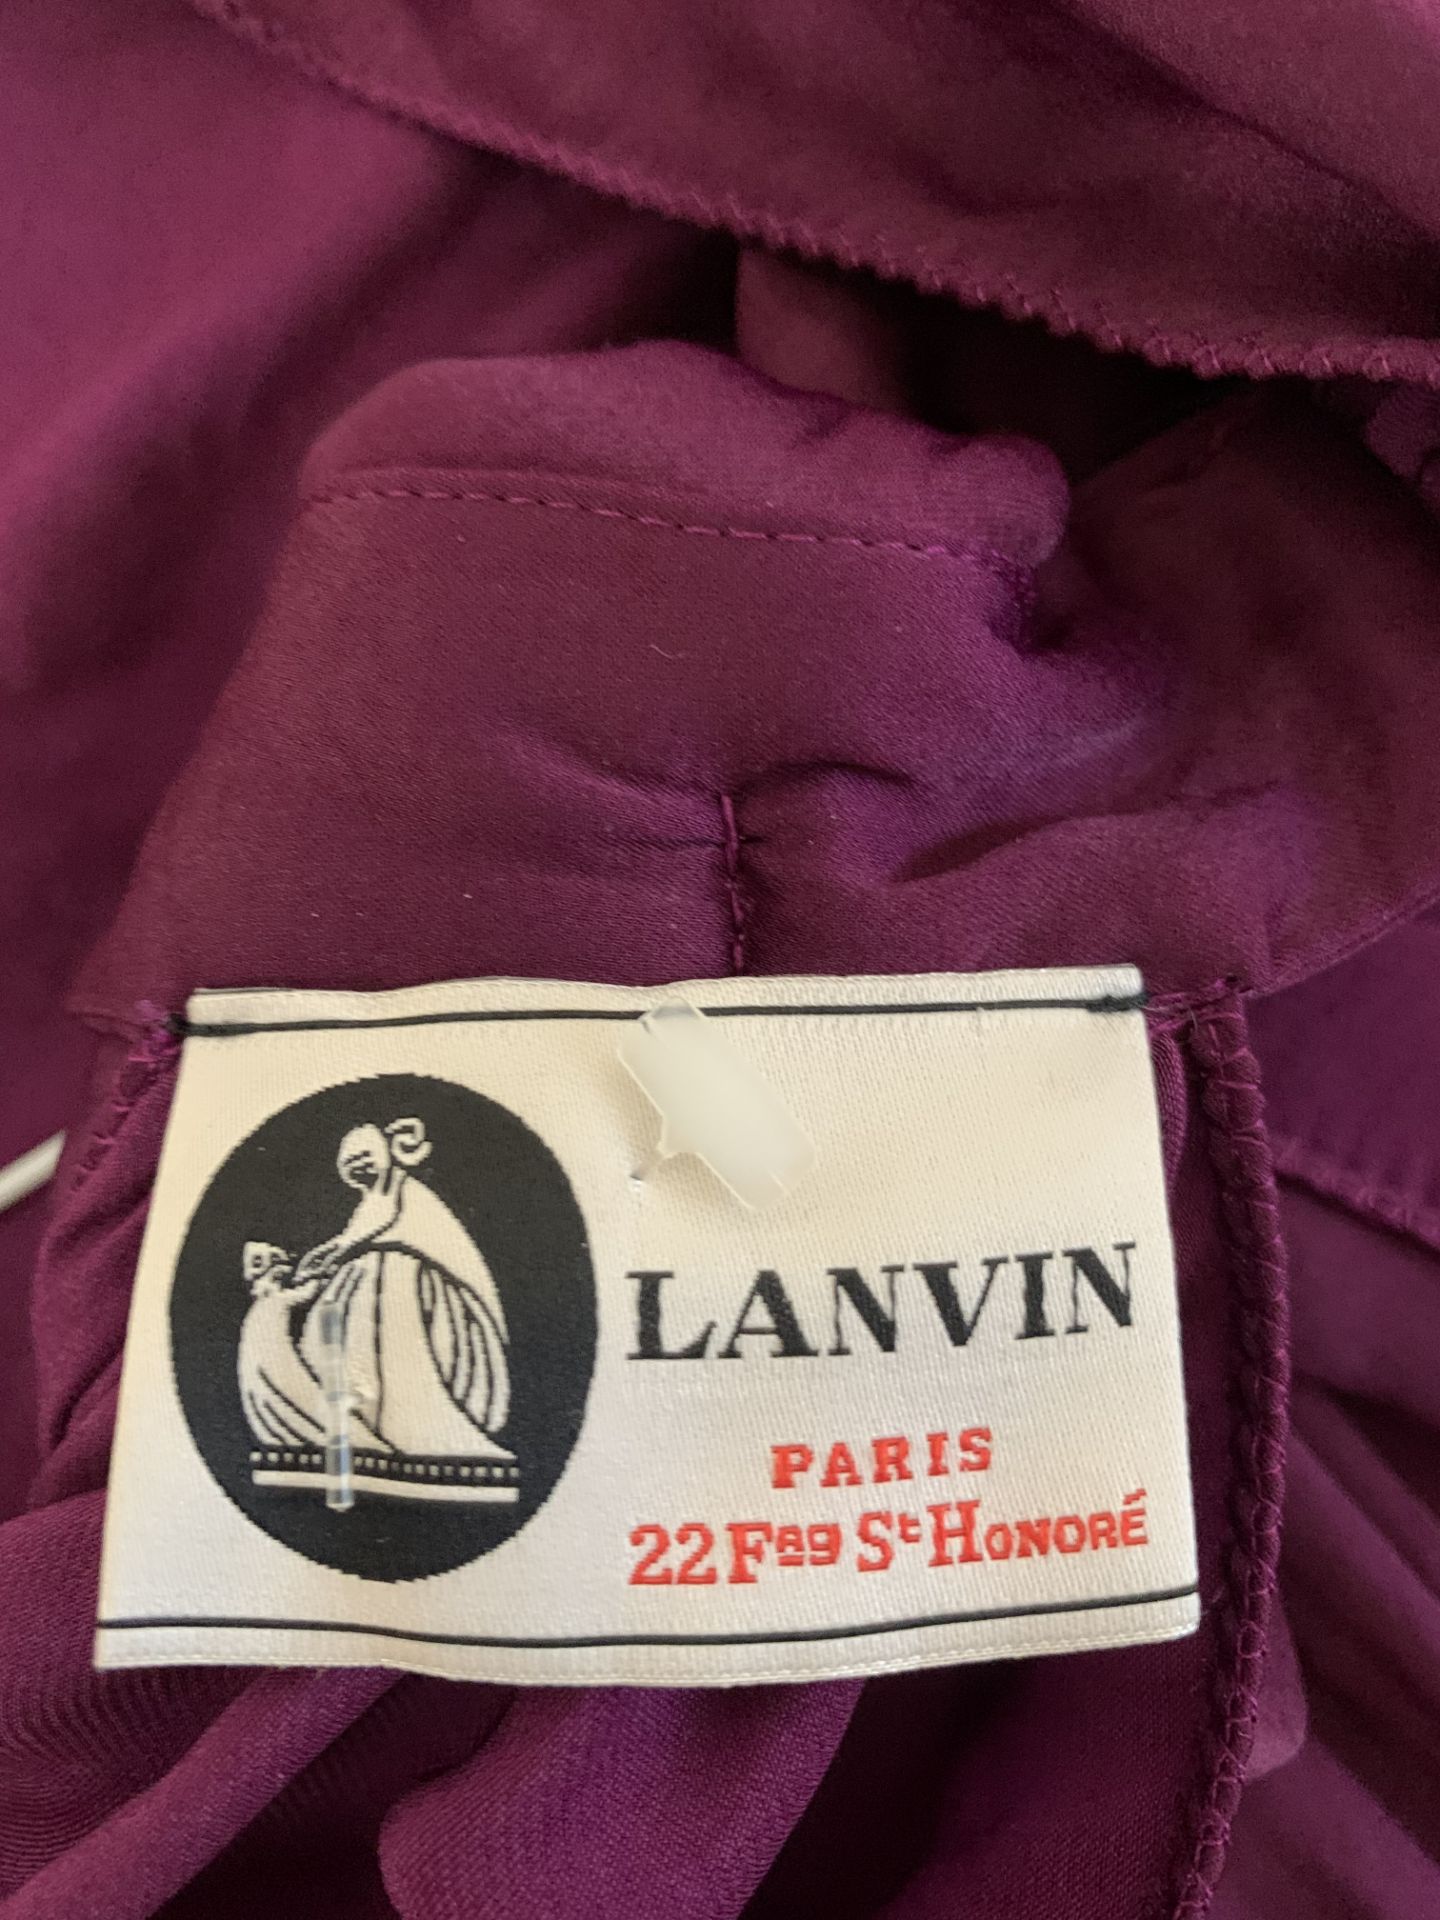 Lanvin cotton top - Image 2 of 2